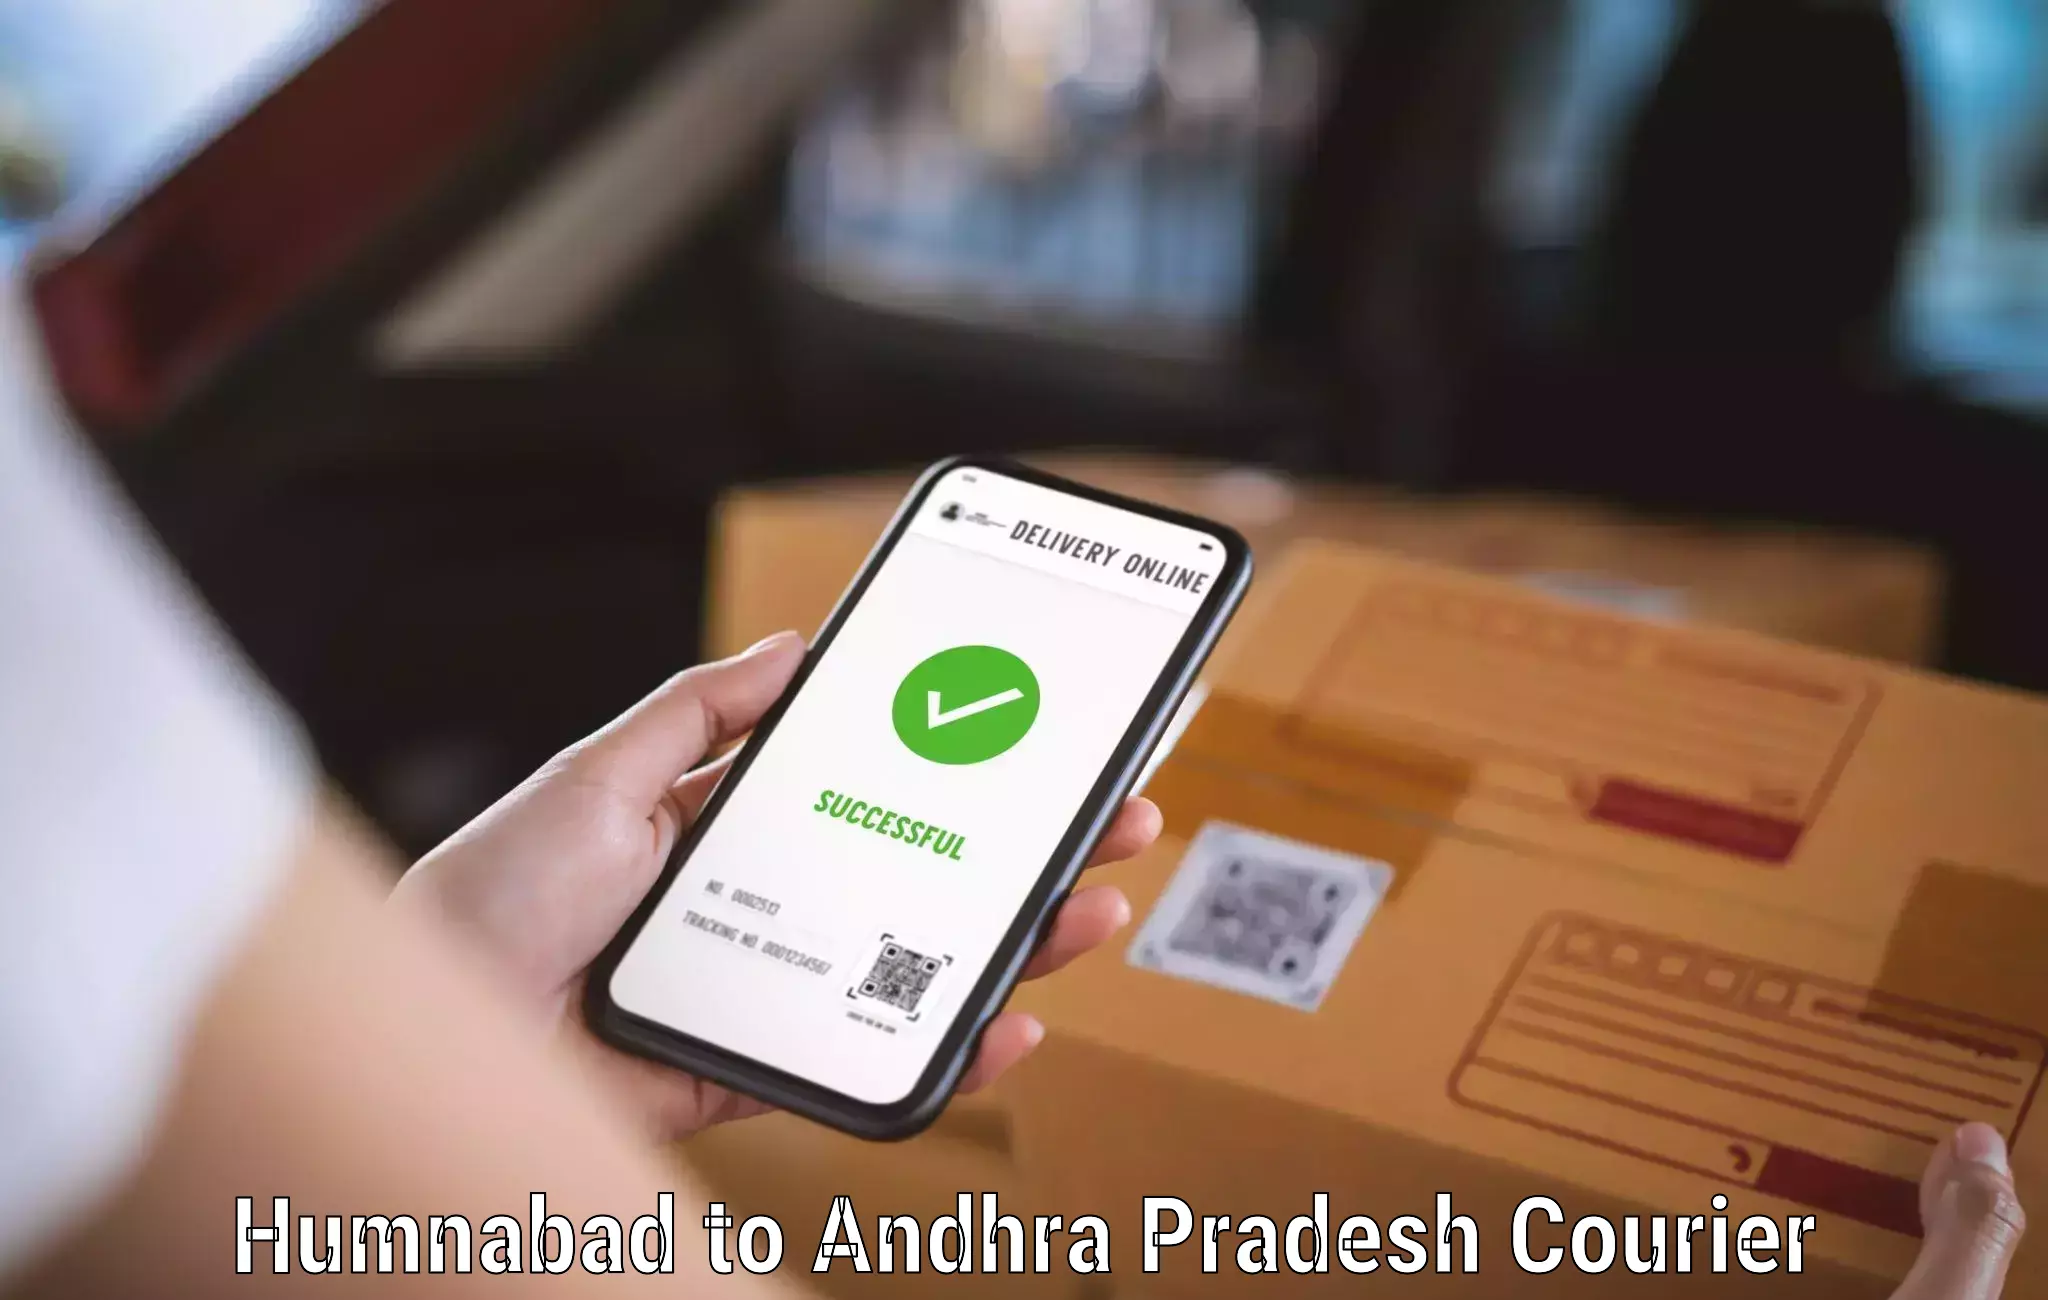 High-speed parcel service Humnabad to Tirupati